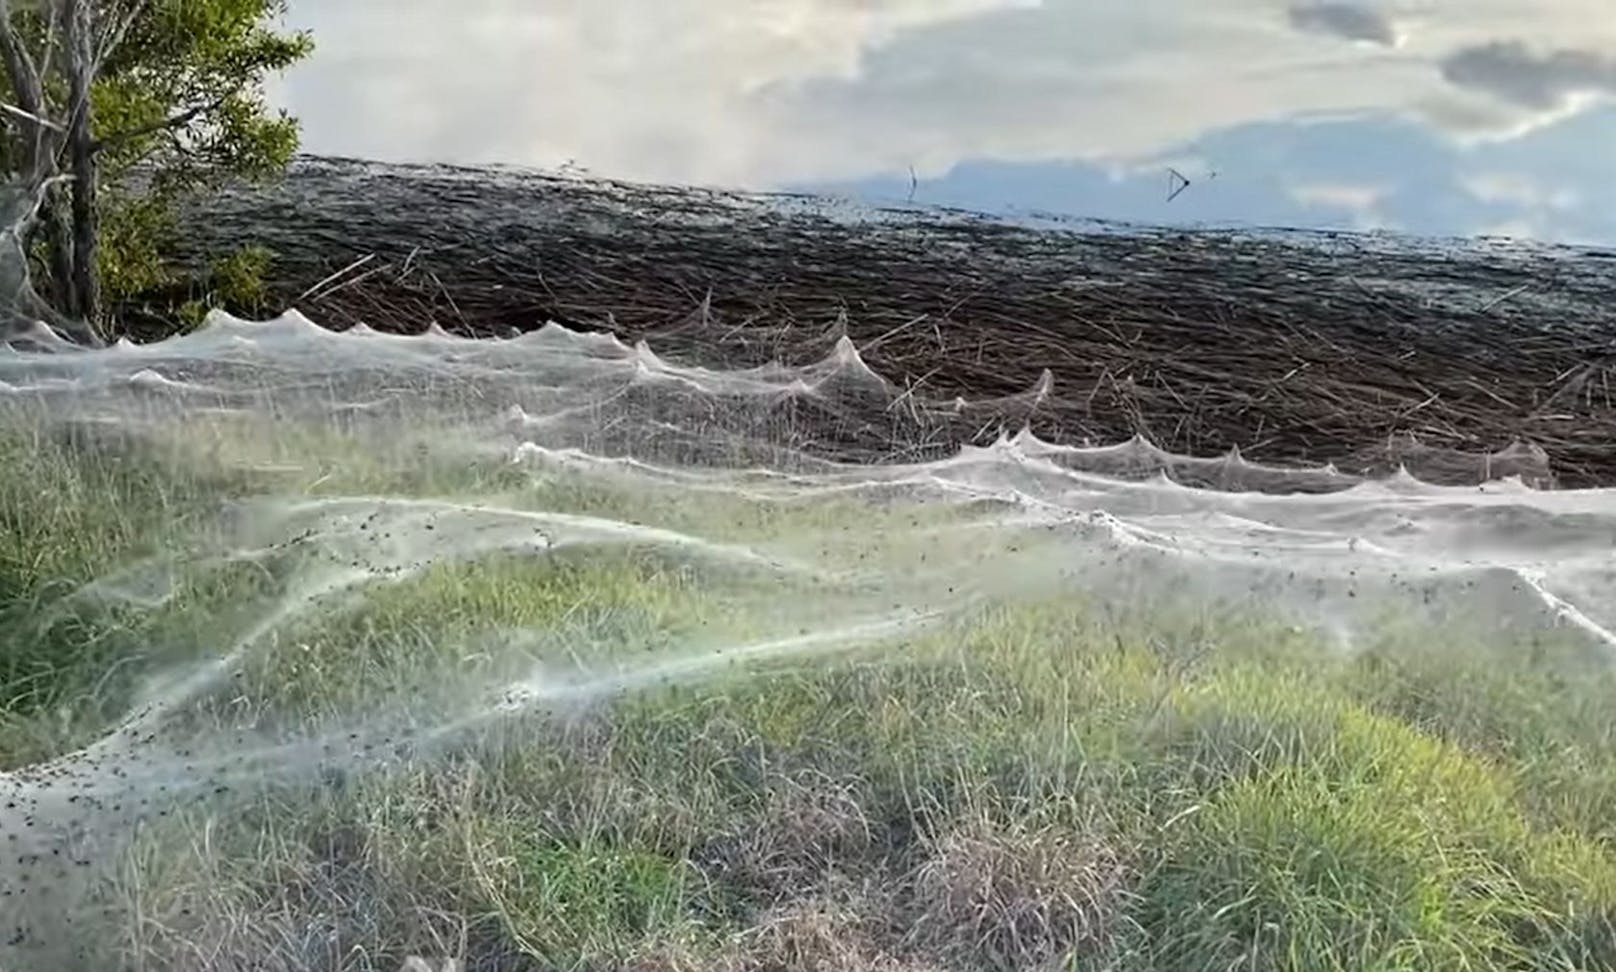 Tausende Webspinnen versuchten sich vor den Wassermassen in Sicherheit zu bringen und bauten wie verrückt.  